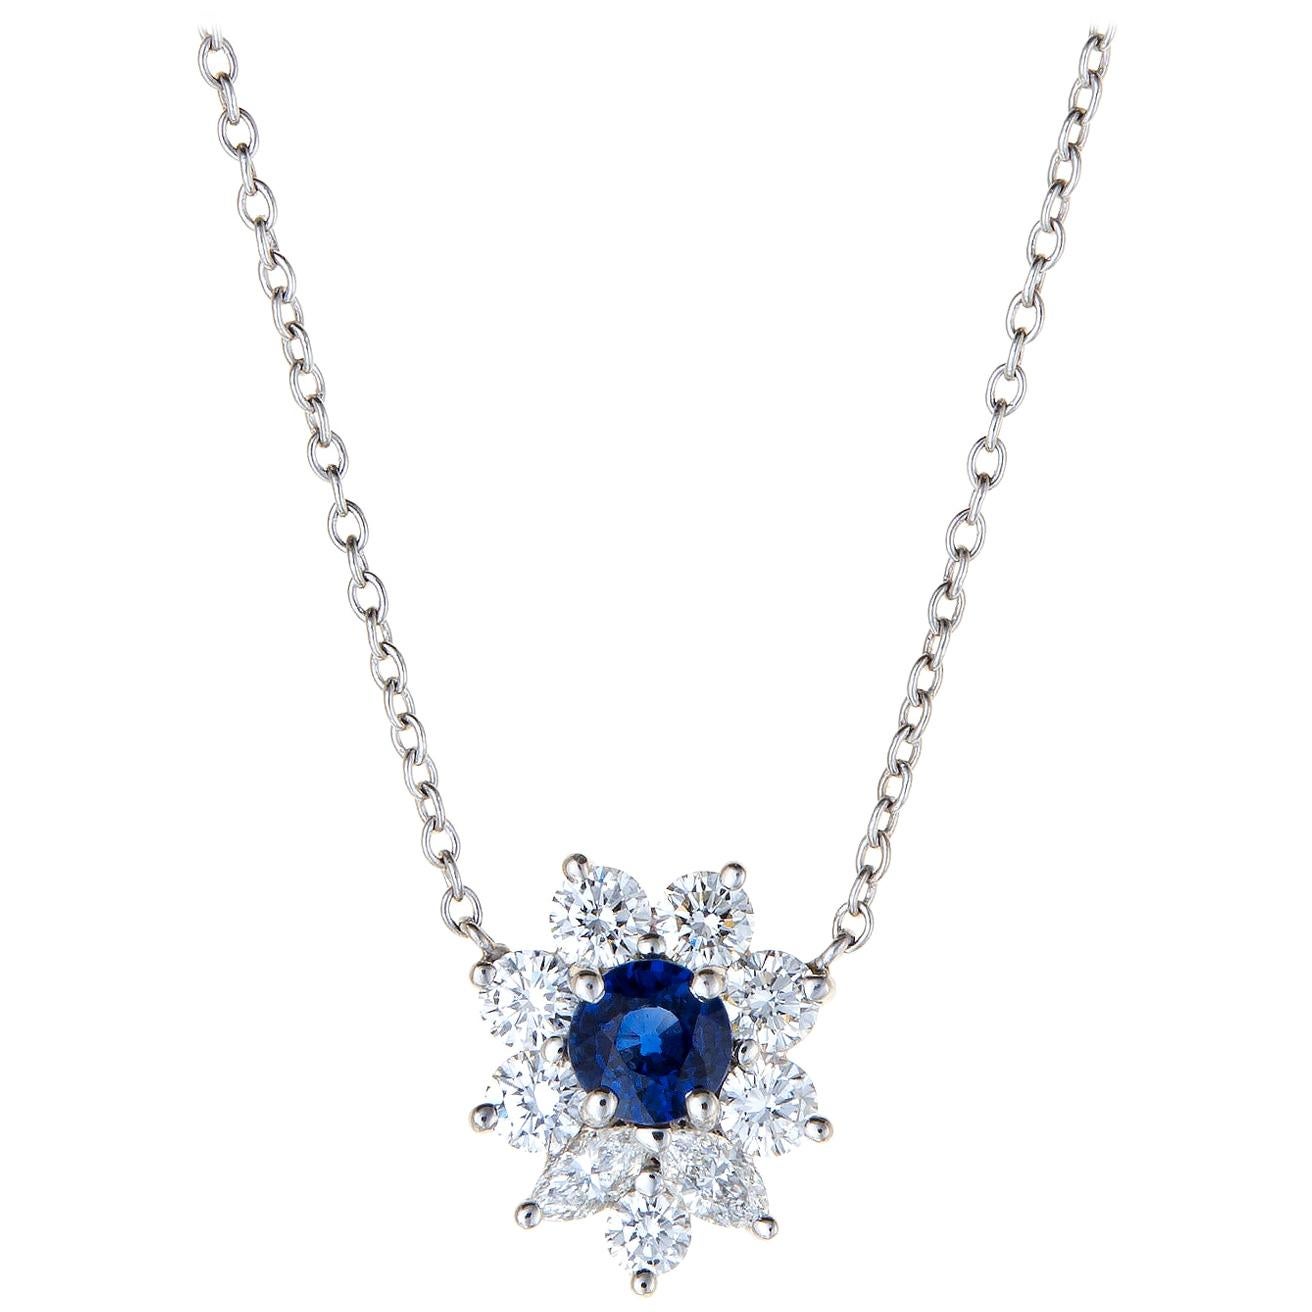 Tiffany & Co. Victoria Sapphire Diamond Necklace Platinum Estate Fine Jewelry